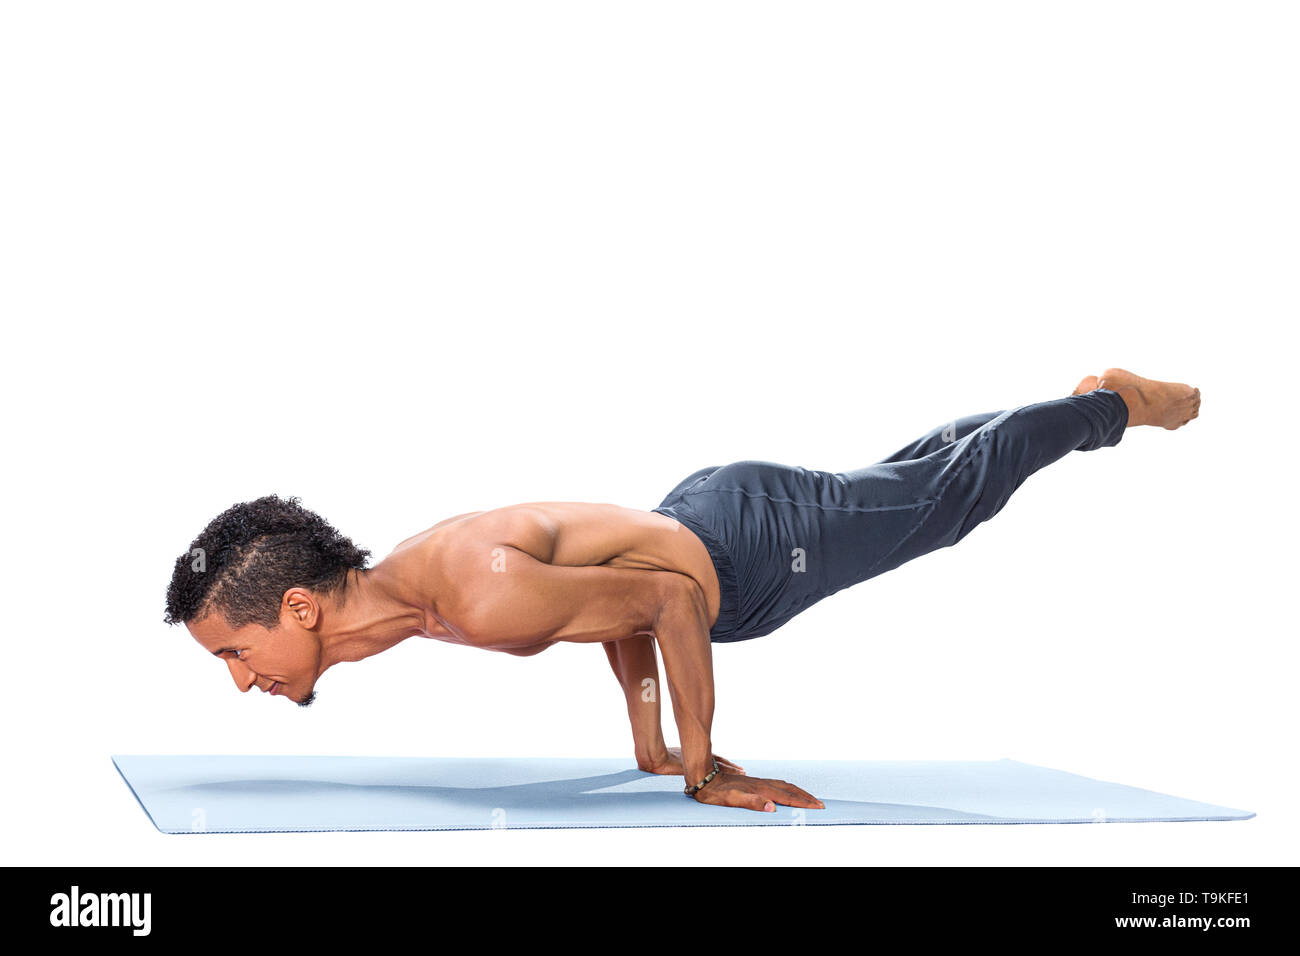 Young man doing yoga asana poses exercise studio photo isolated on white background Stock Photo